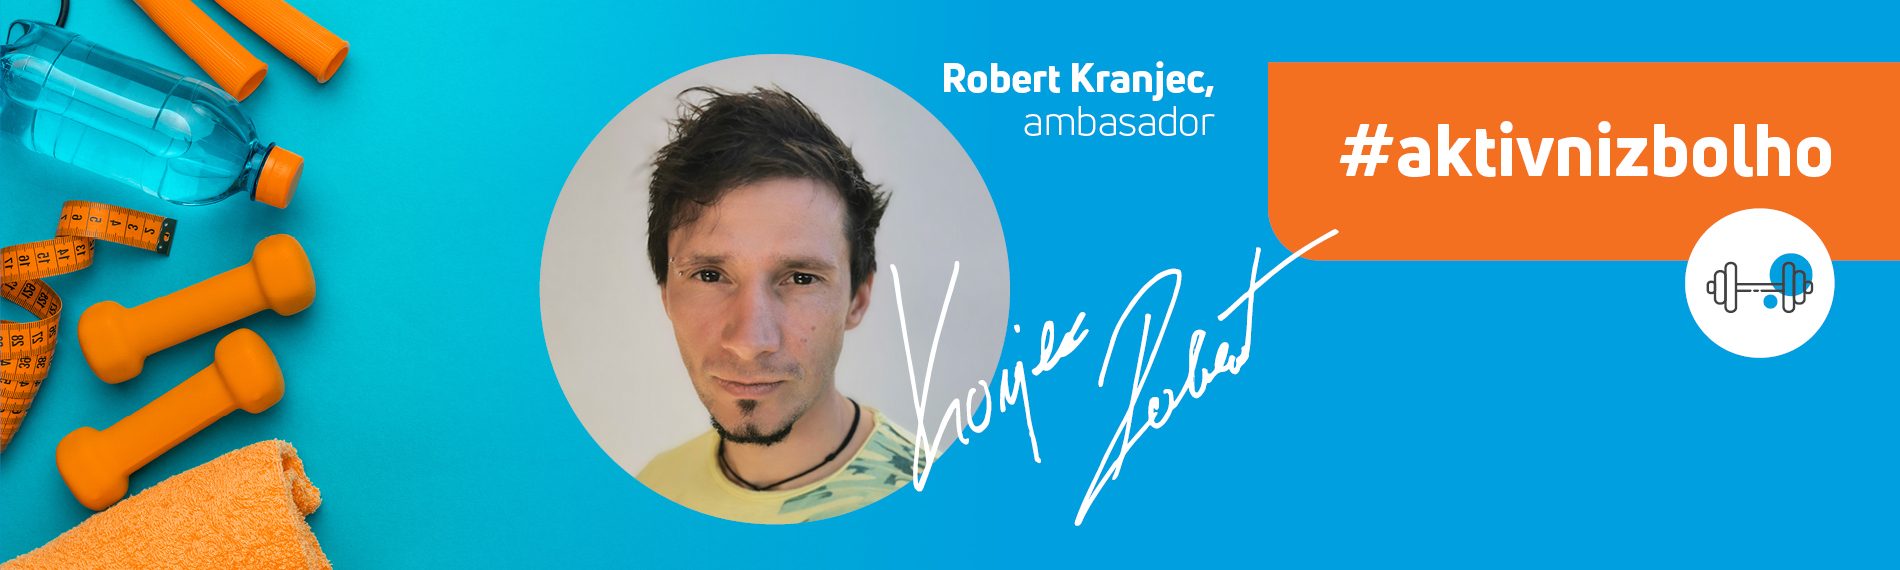 Ambasador projekta Aktivni z bolha.com, je postal priljubljeni Robert Kranjec, nekdanji slovenski smučarski skakalec in svetovni prvak.